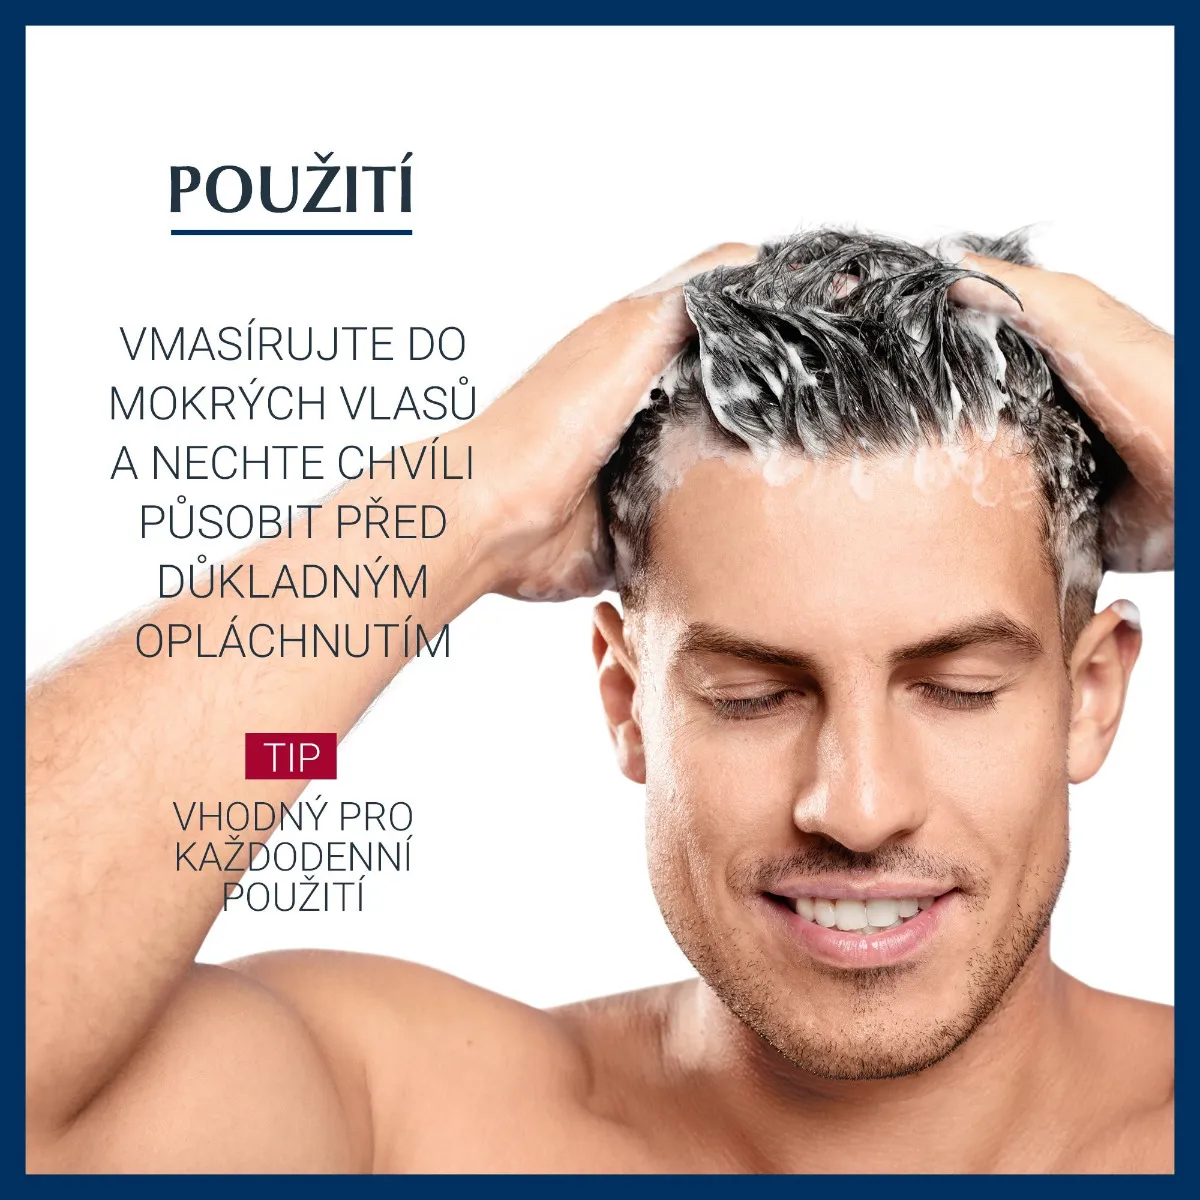 Eucerin Dermocapillaire Šampon proti vypadávání vlasů 250 ml